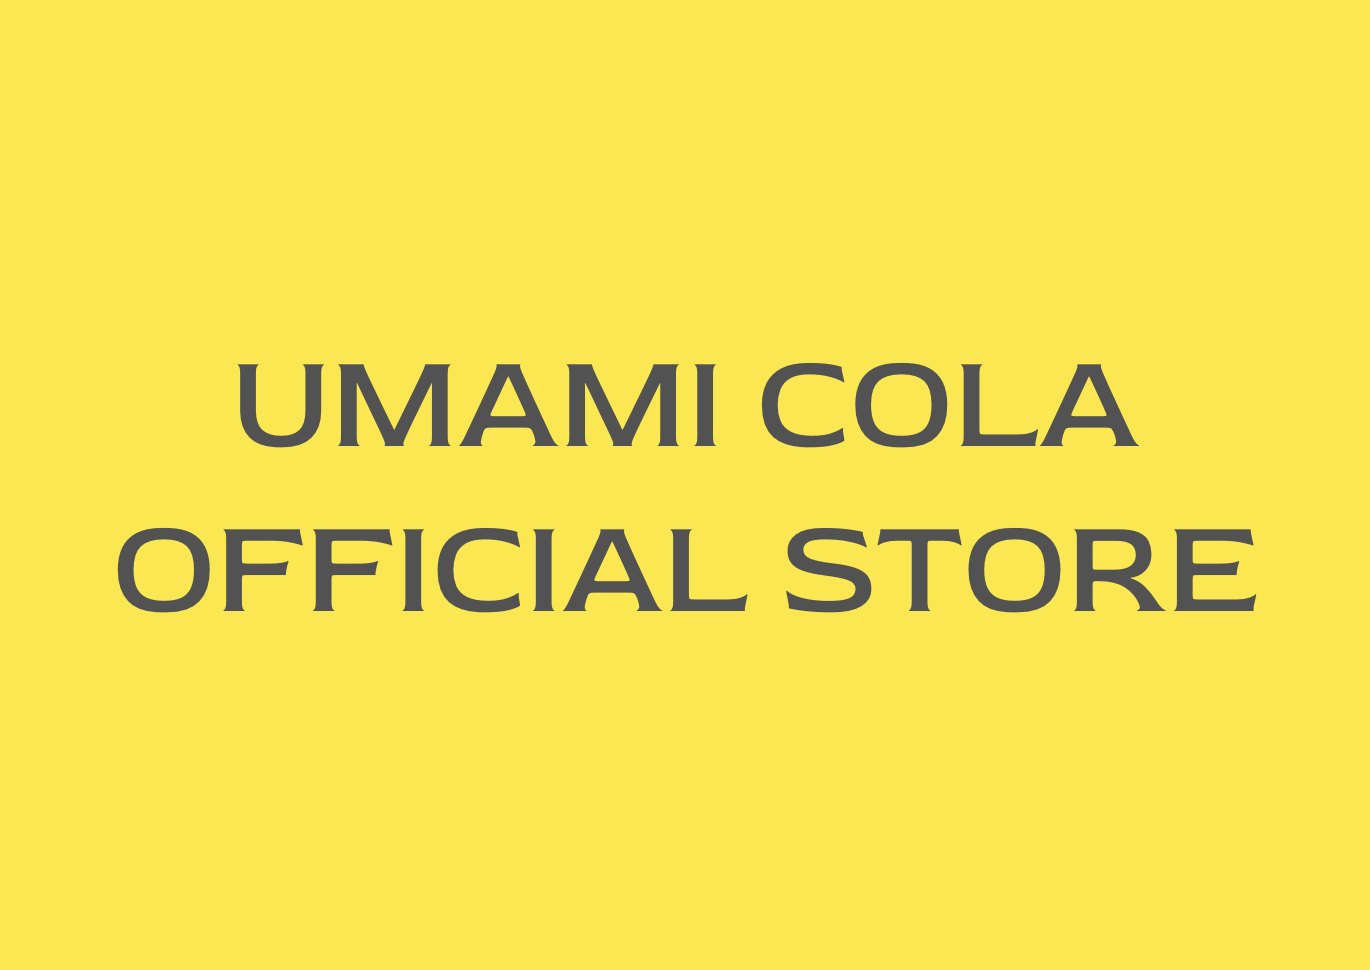 UMAMI COLA OFFICIAL STORE